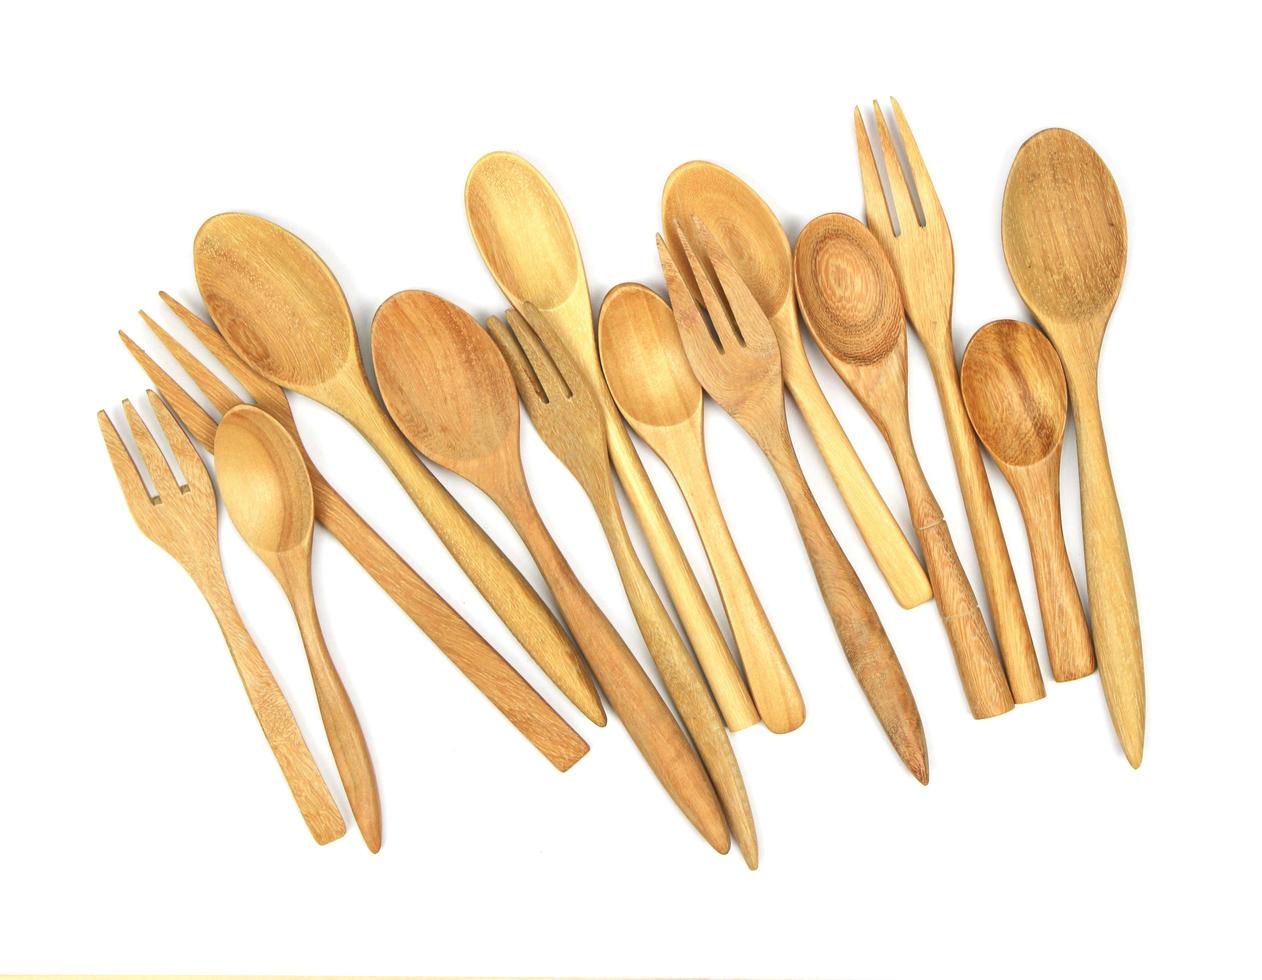 Bunch of wooden utensils photo